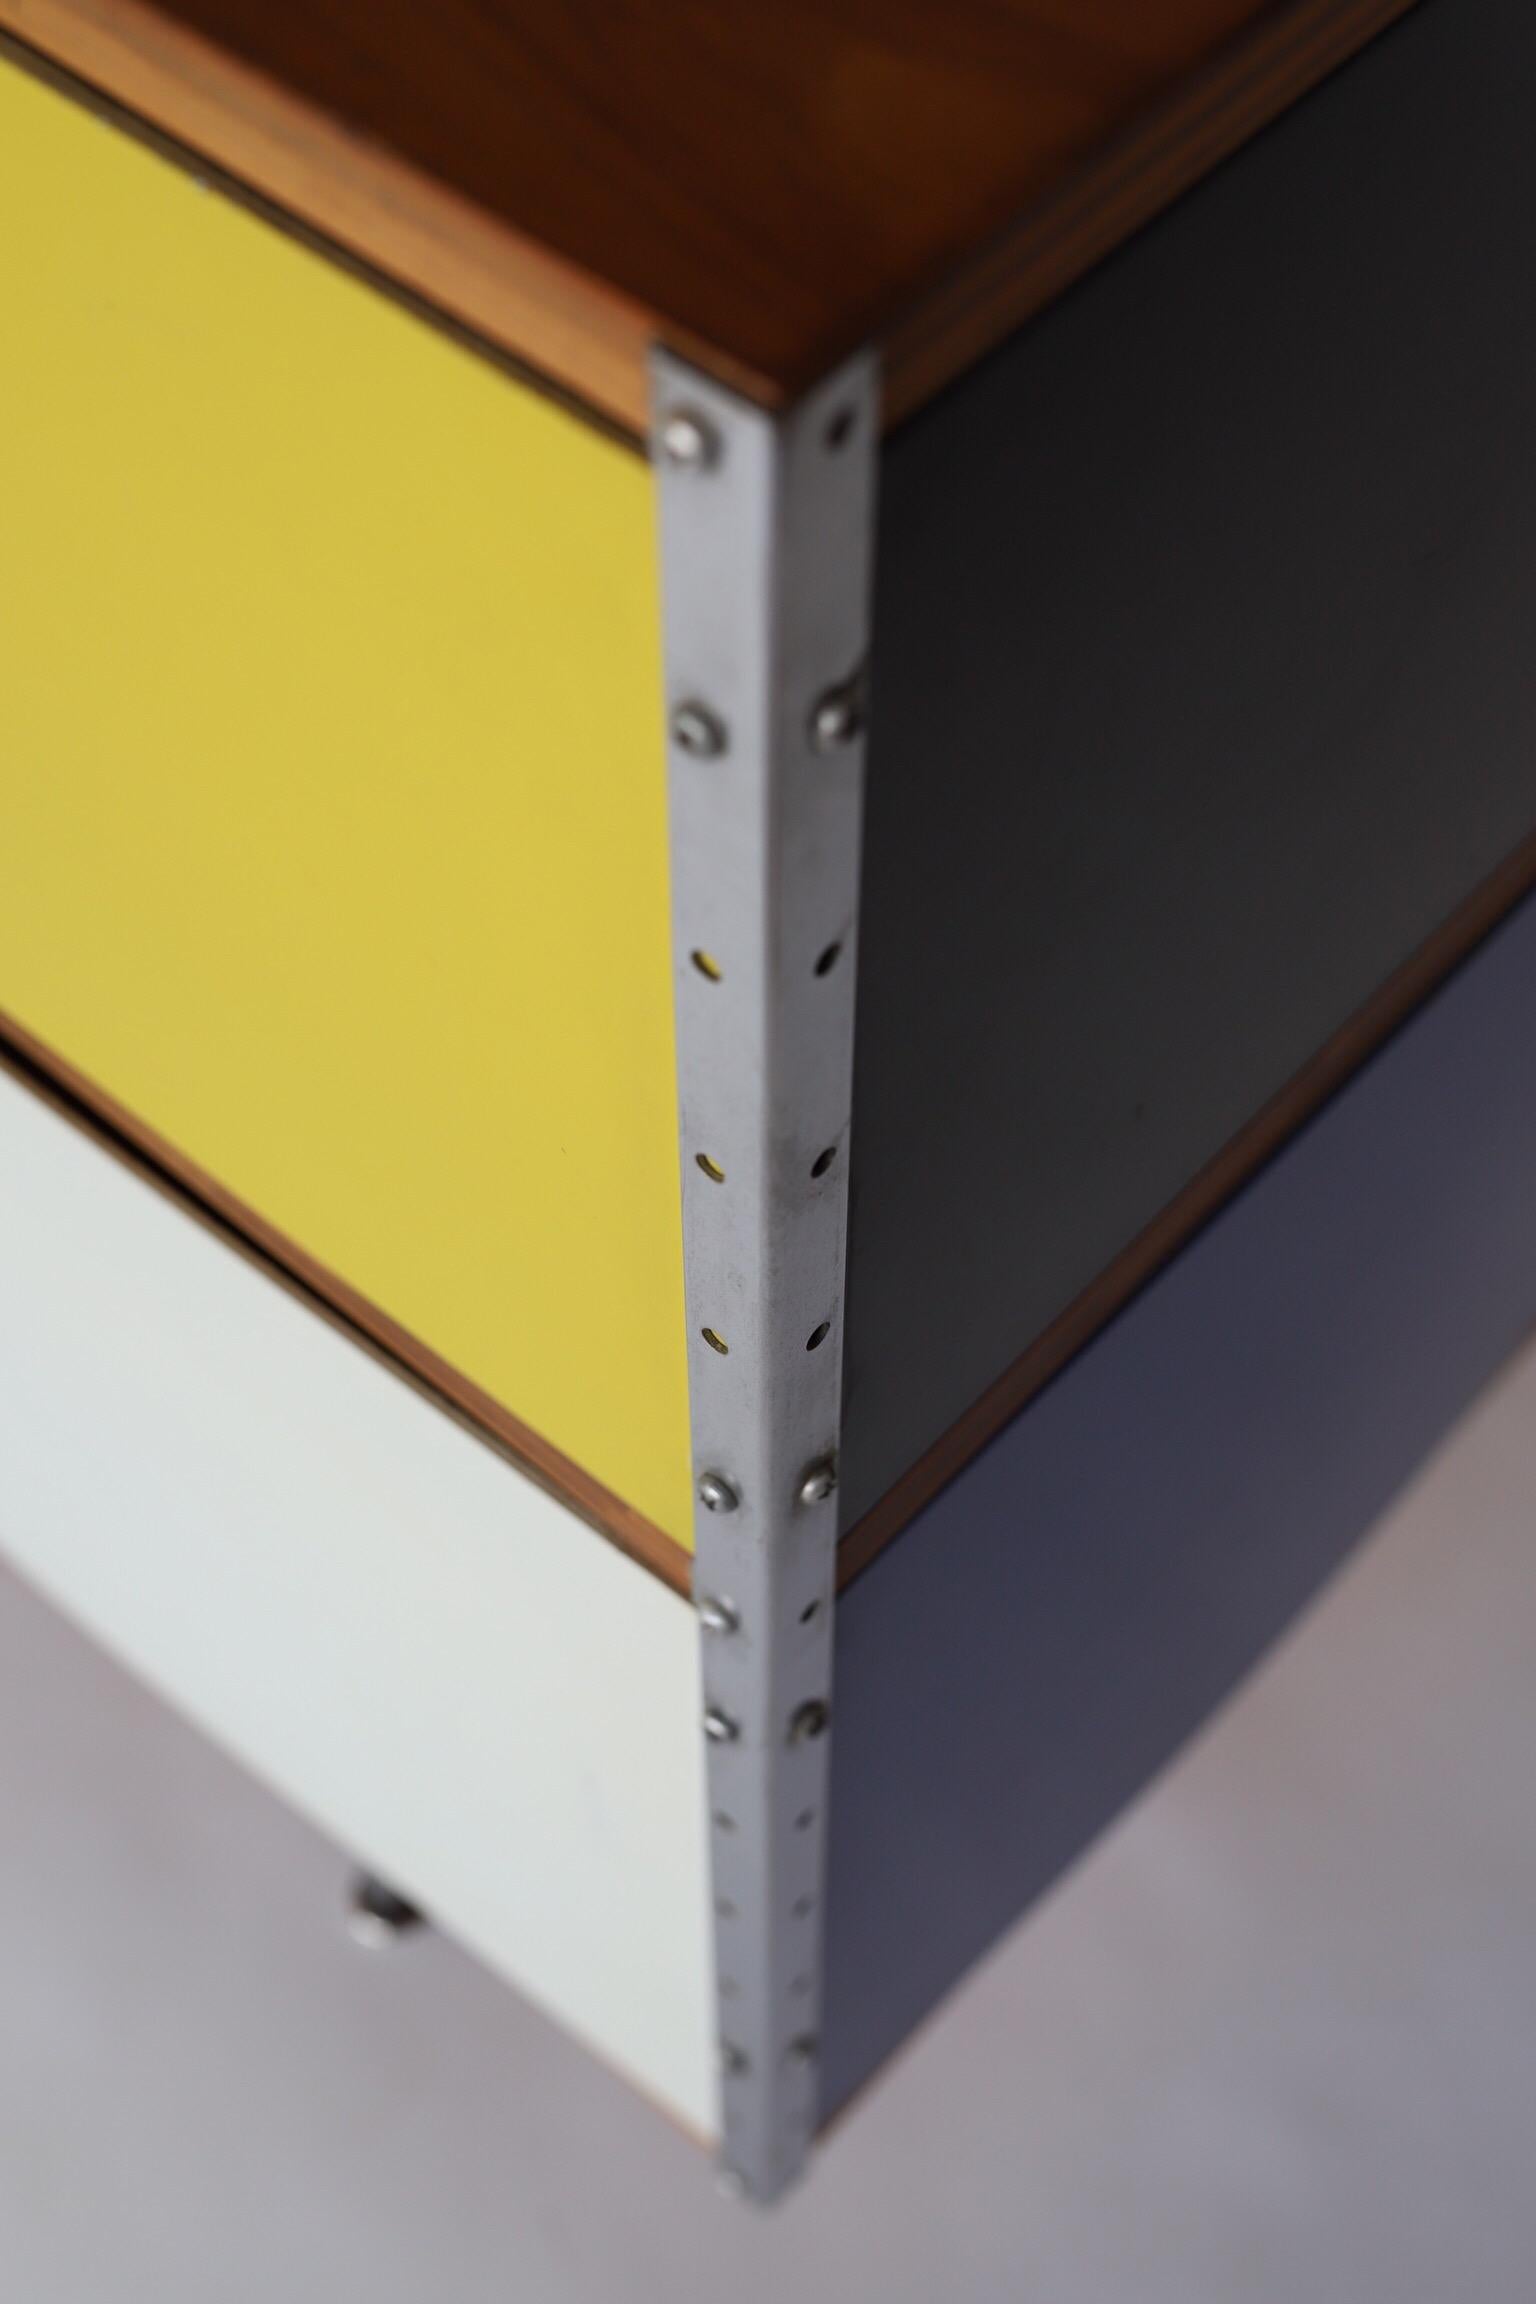 ESU200 by Eames for Herman Miller Credenza Sideboard Dresser 4